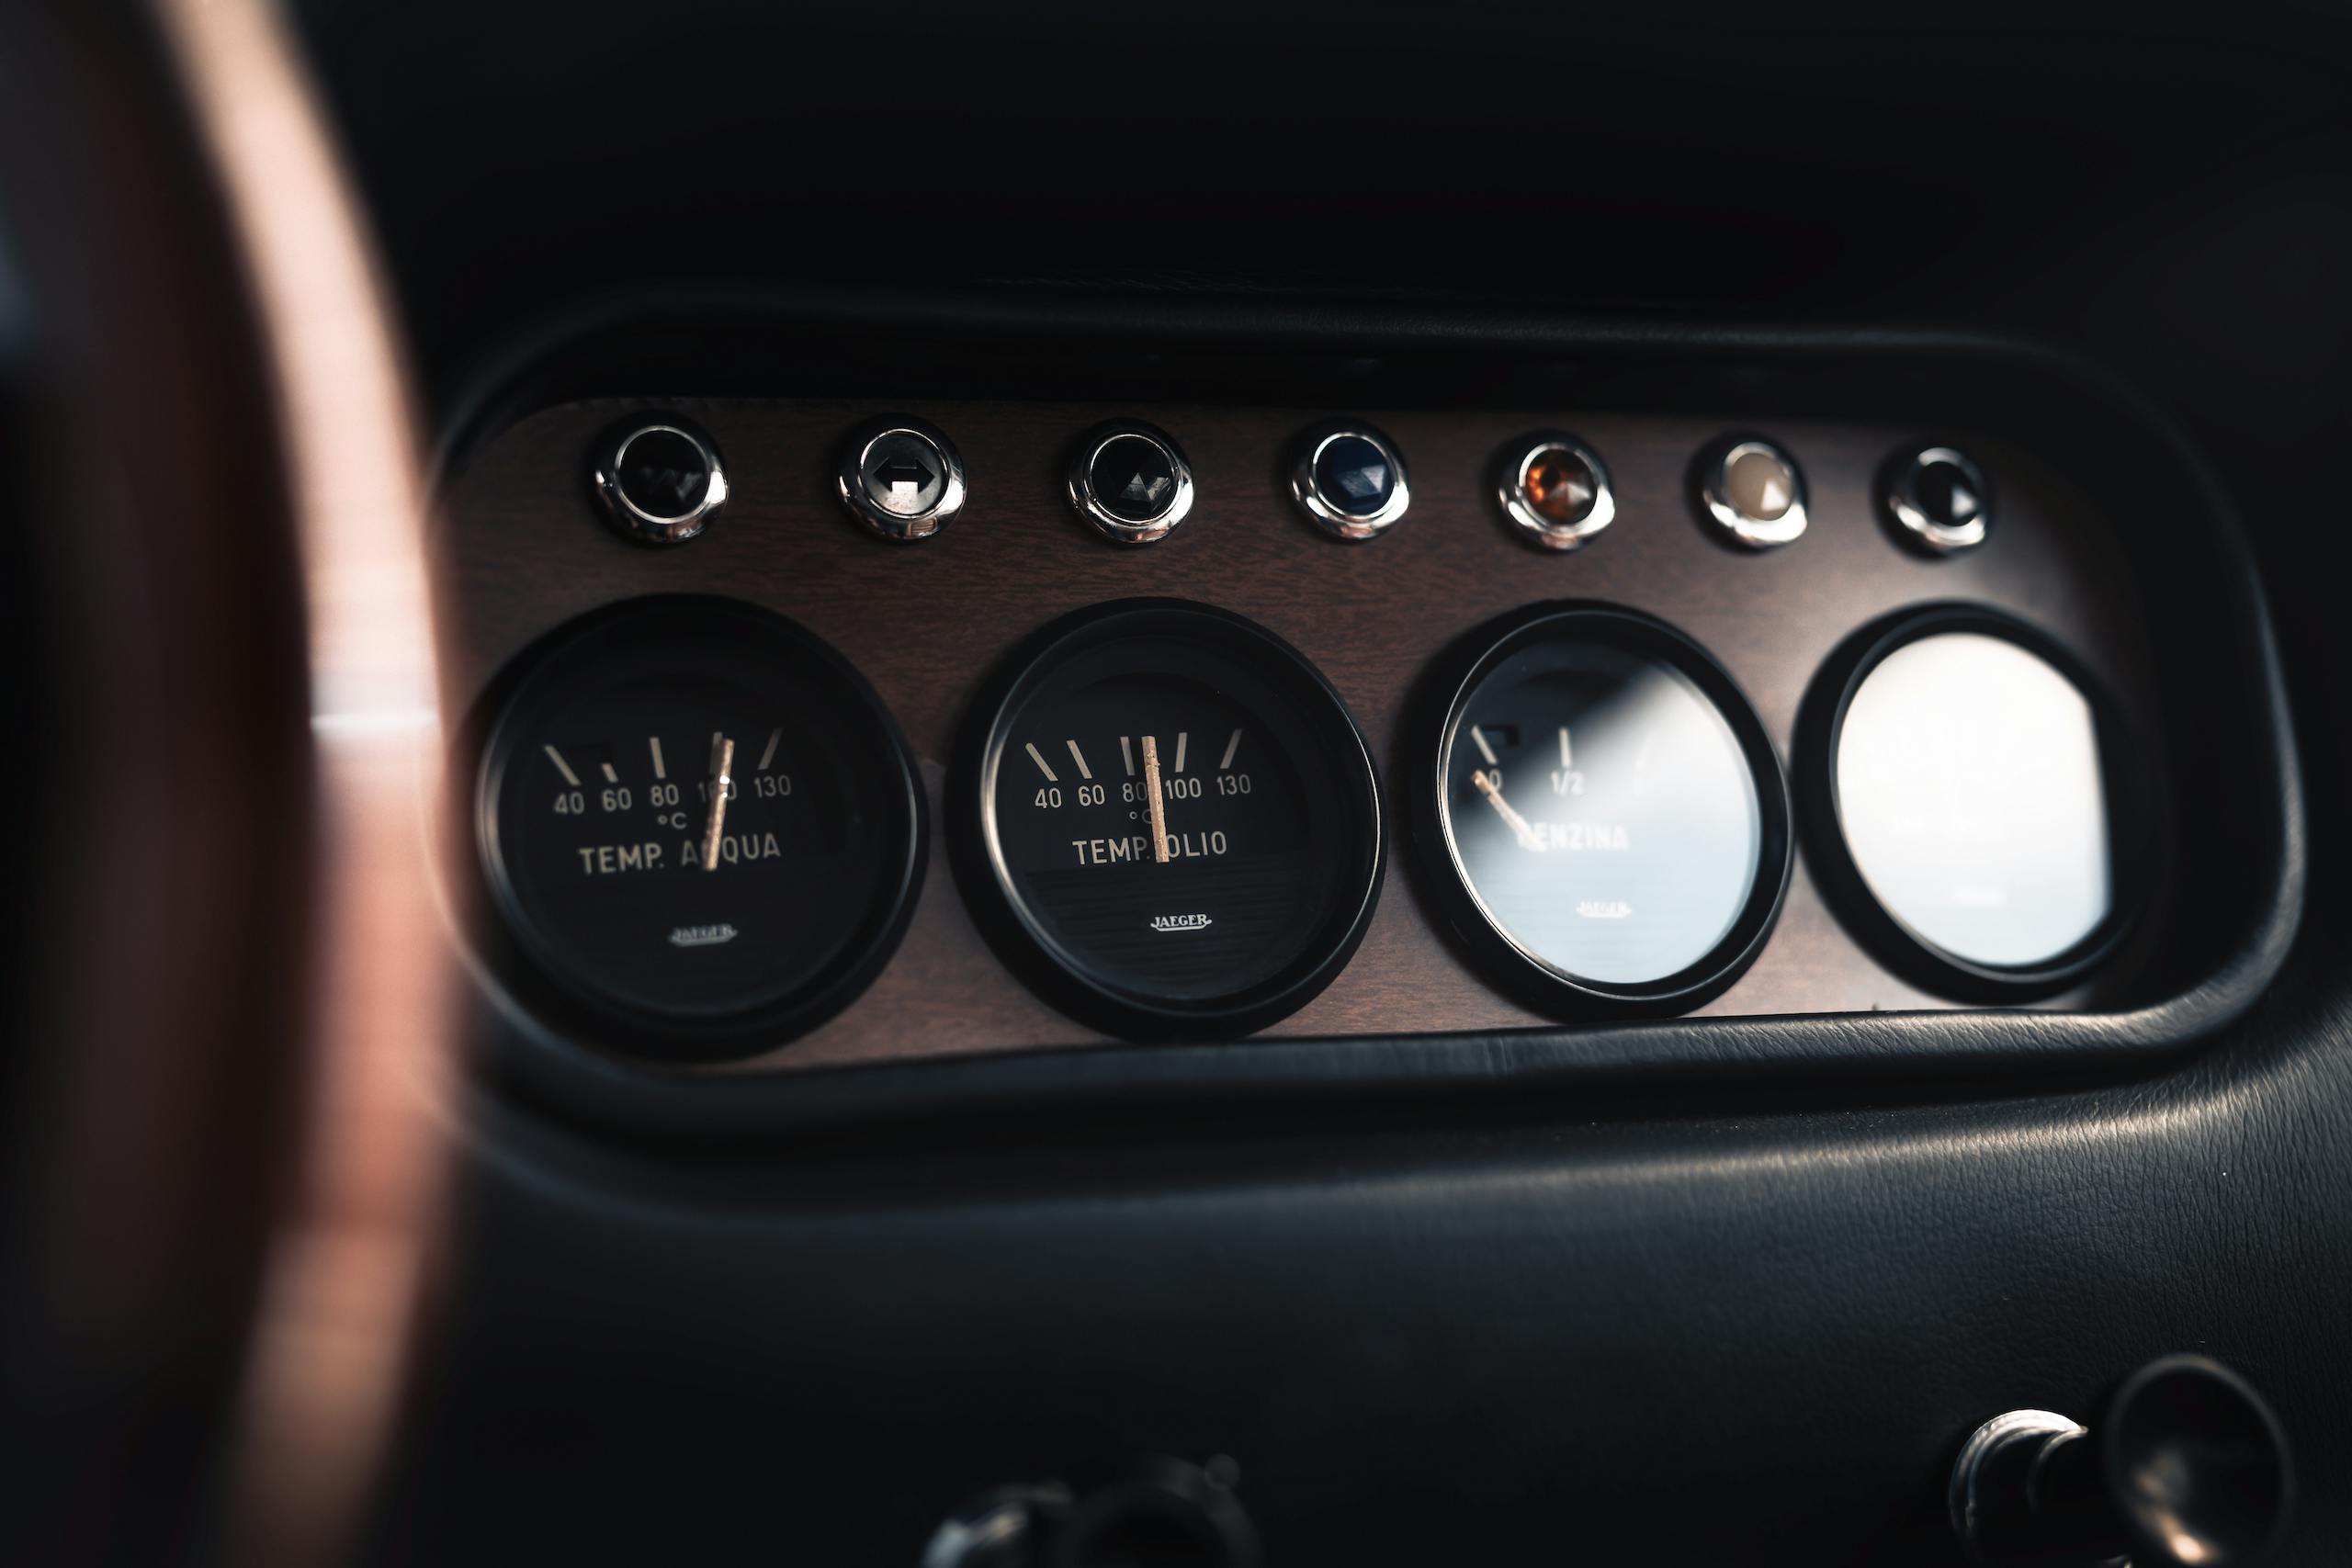 Lamborghini 400 GT interior center dash gauges